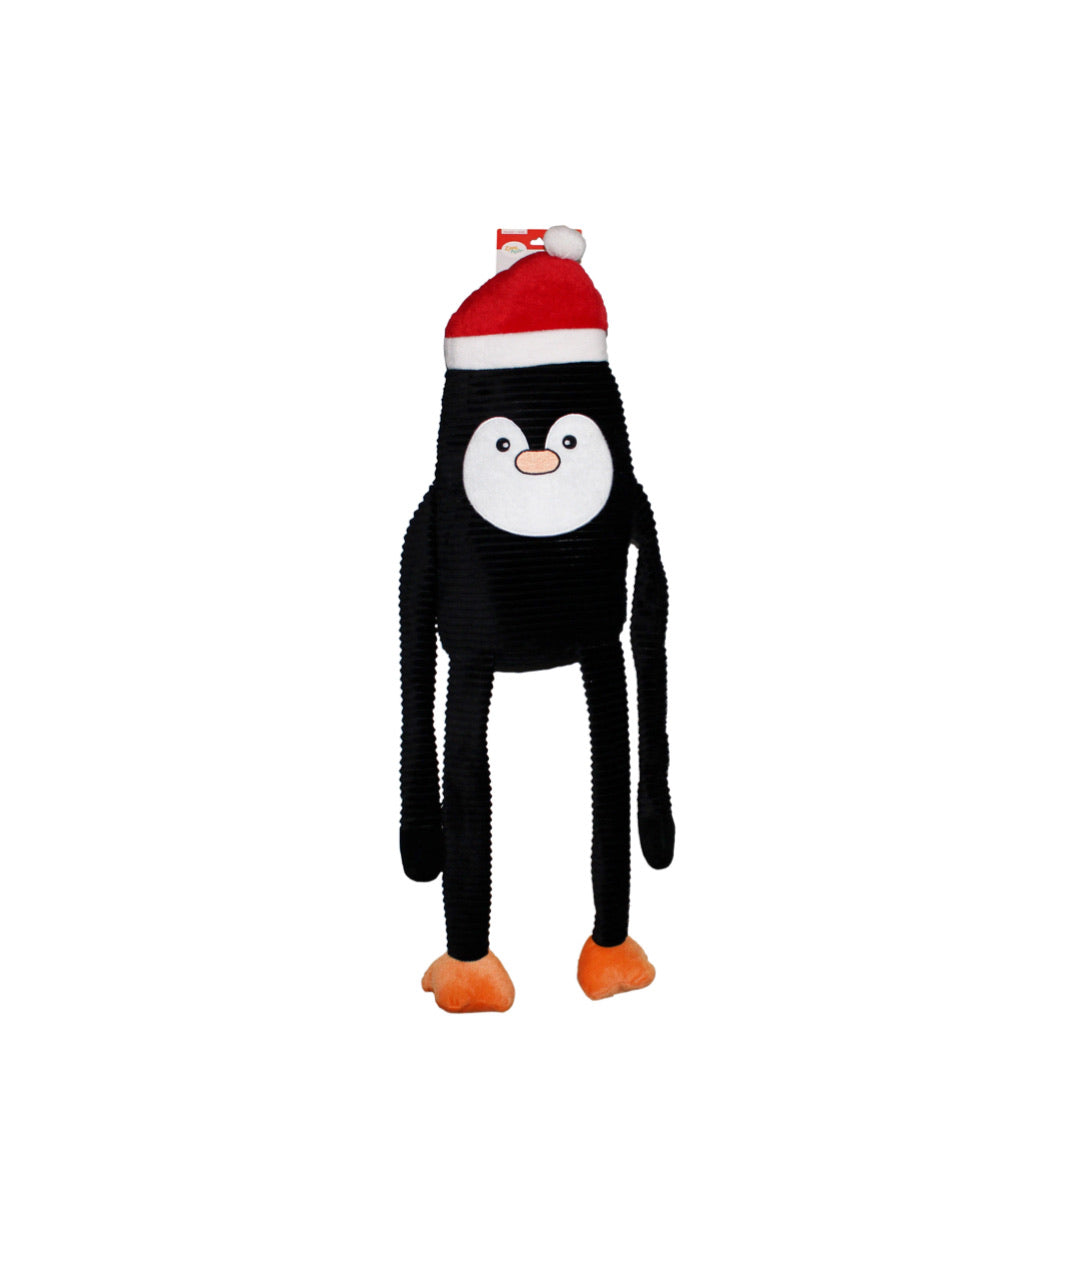 Zippypaws Holiday Crinkle - Penguin Small Dog Toy